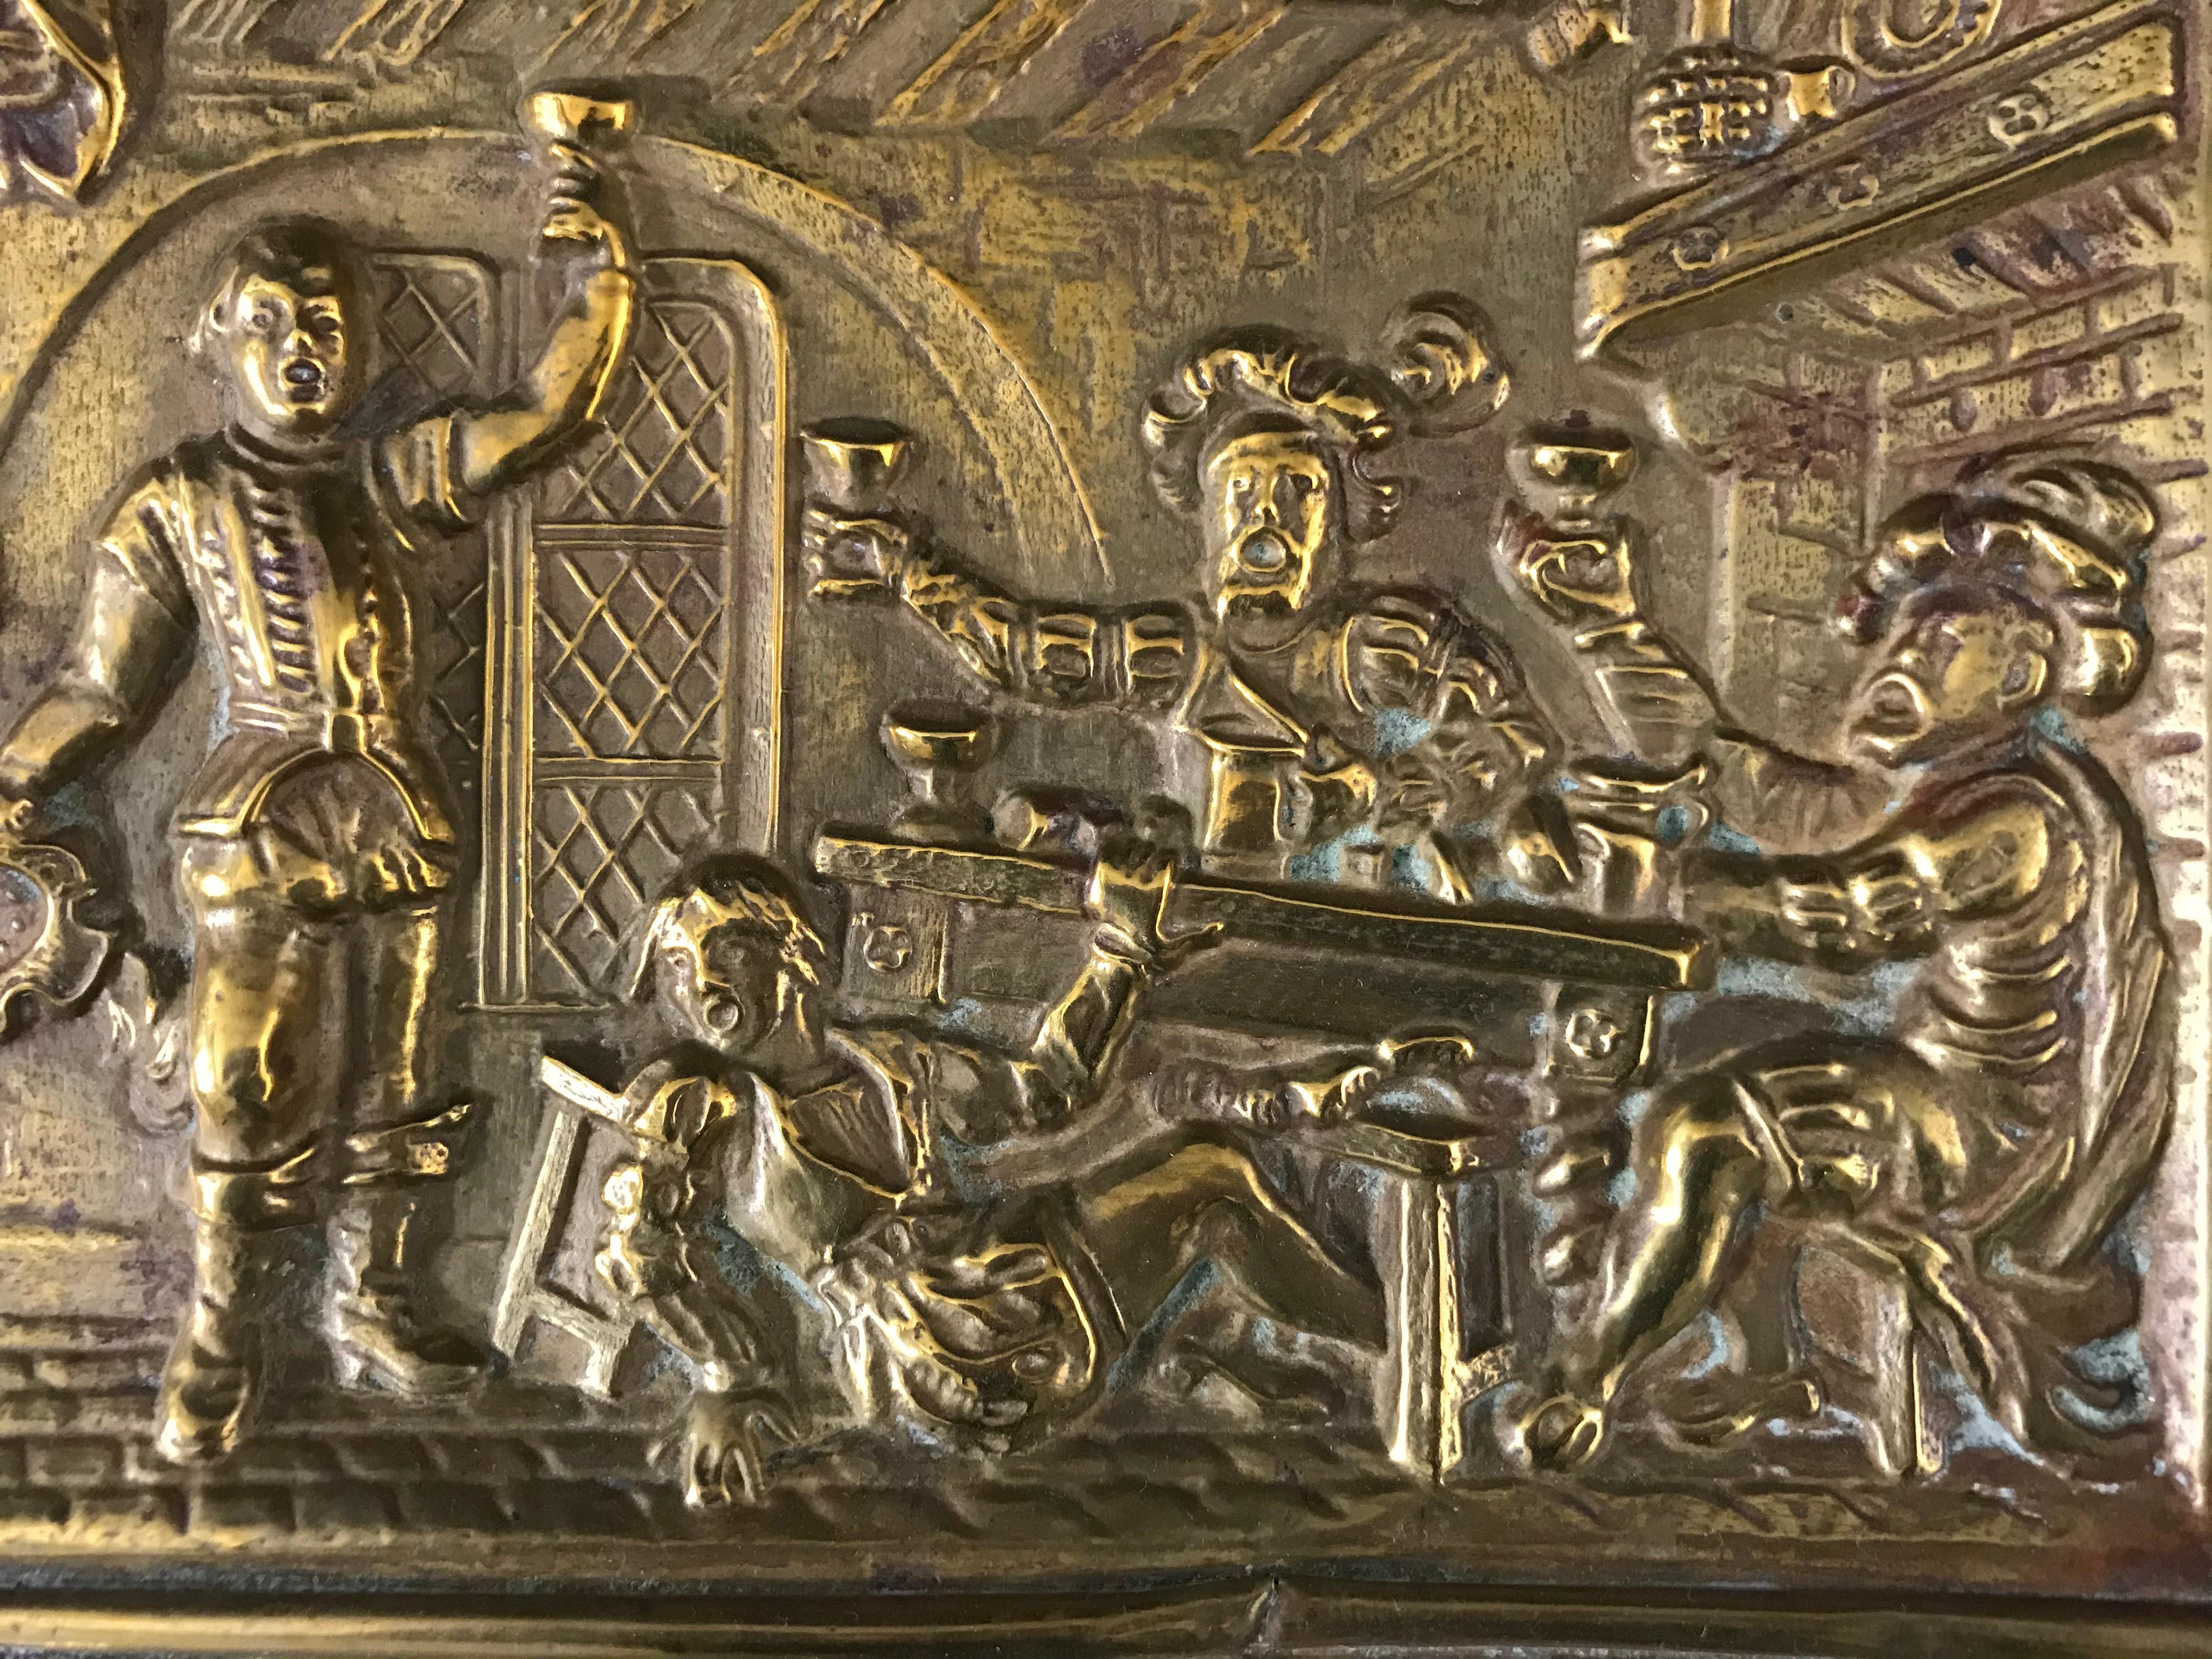 Hübsche geprägte Kupferplatte, die eine Tavernenszene im Stil des 16. Jahrhunderts darstellt. In einem Renaissance-Interieur trinken vier Männer, drei von ihnen heben ihre Becher, der vierte ist sichtlich betrunken von seinem Sitz gefallen. Ein